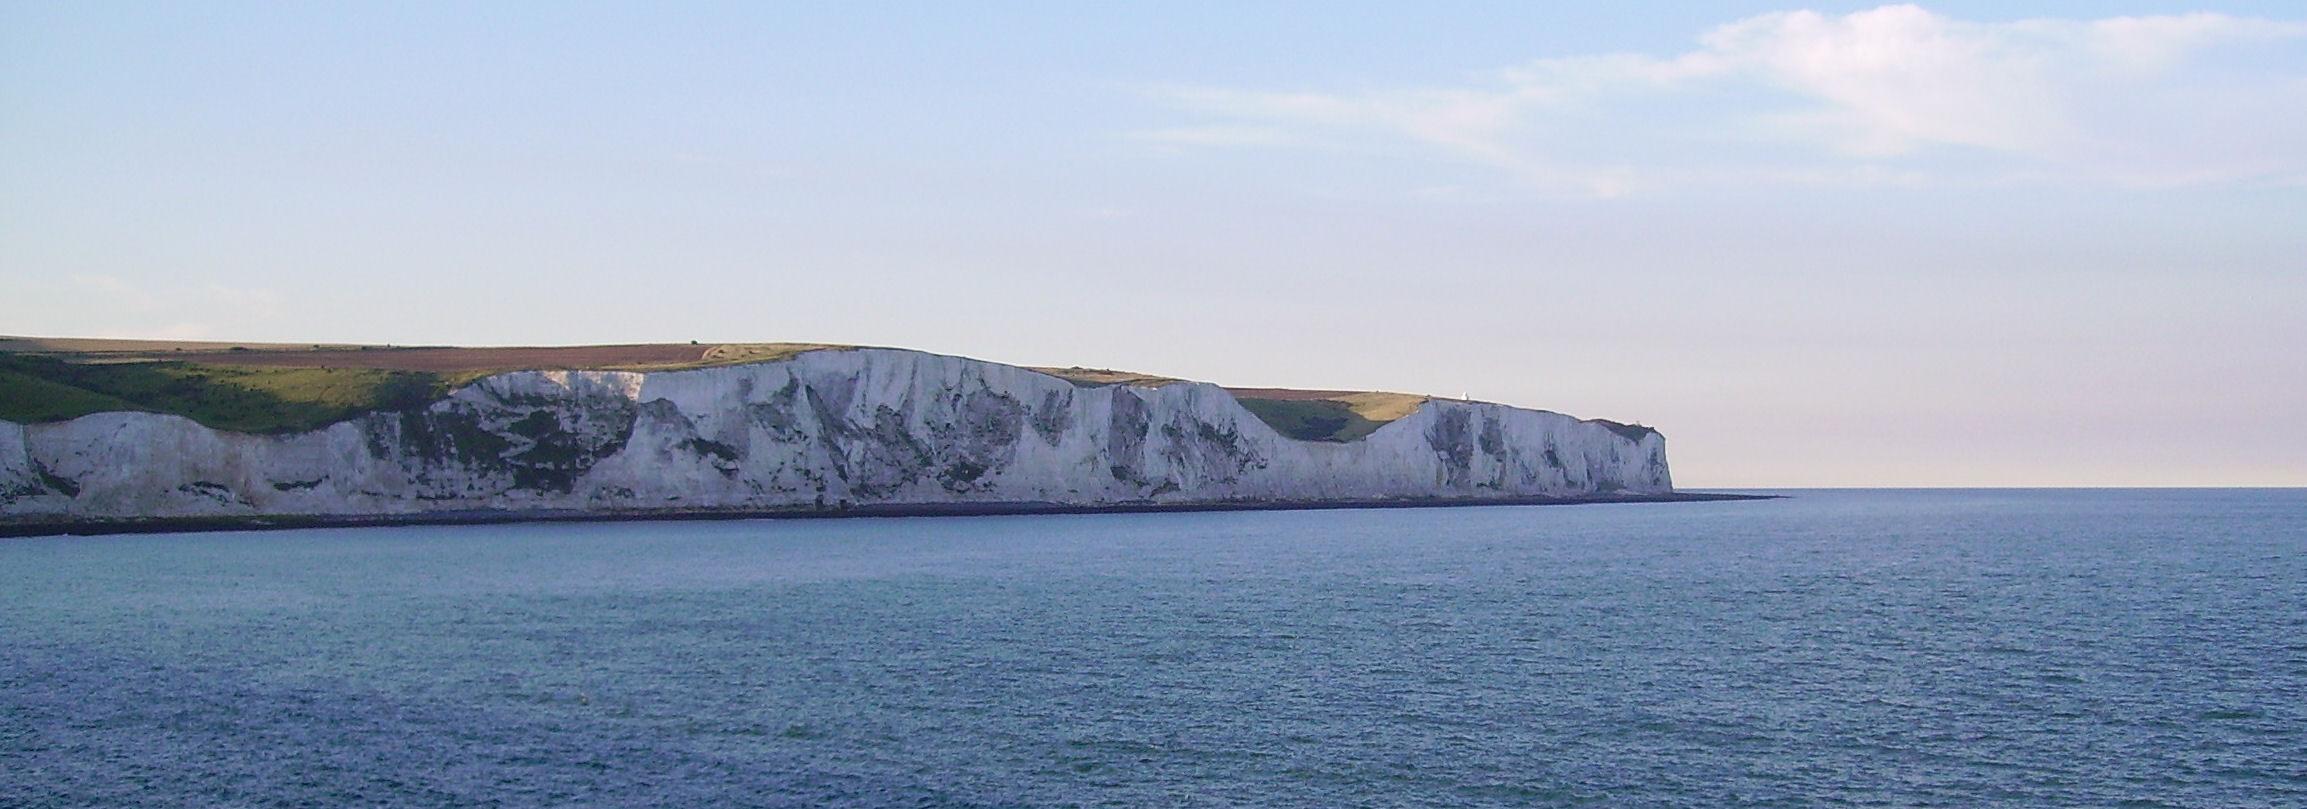 Cliffs_of_Dover_01.jpg